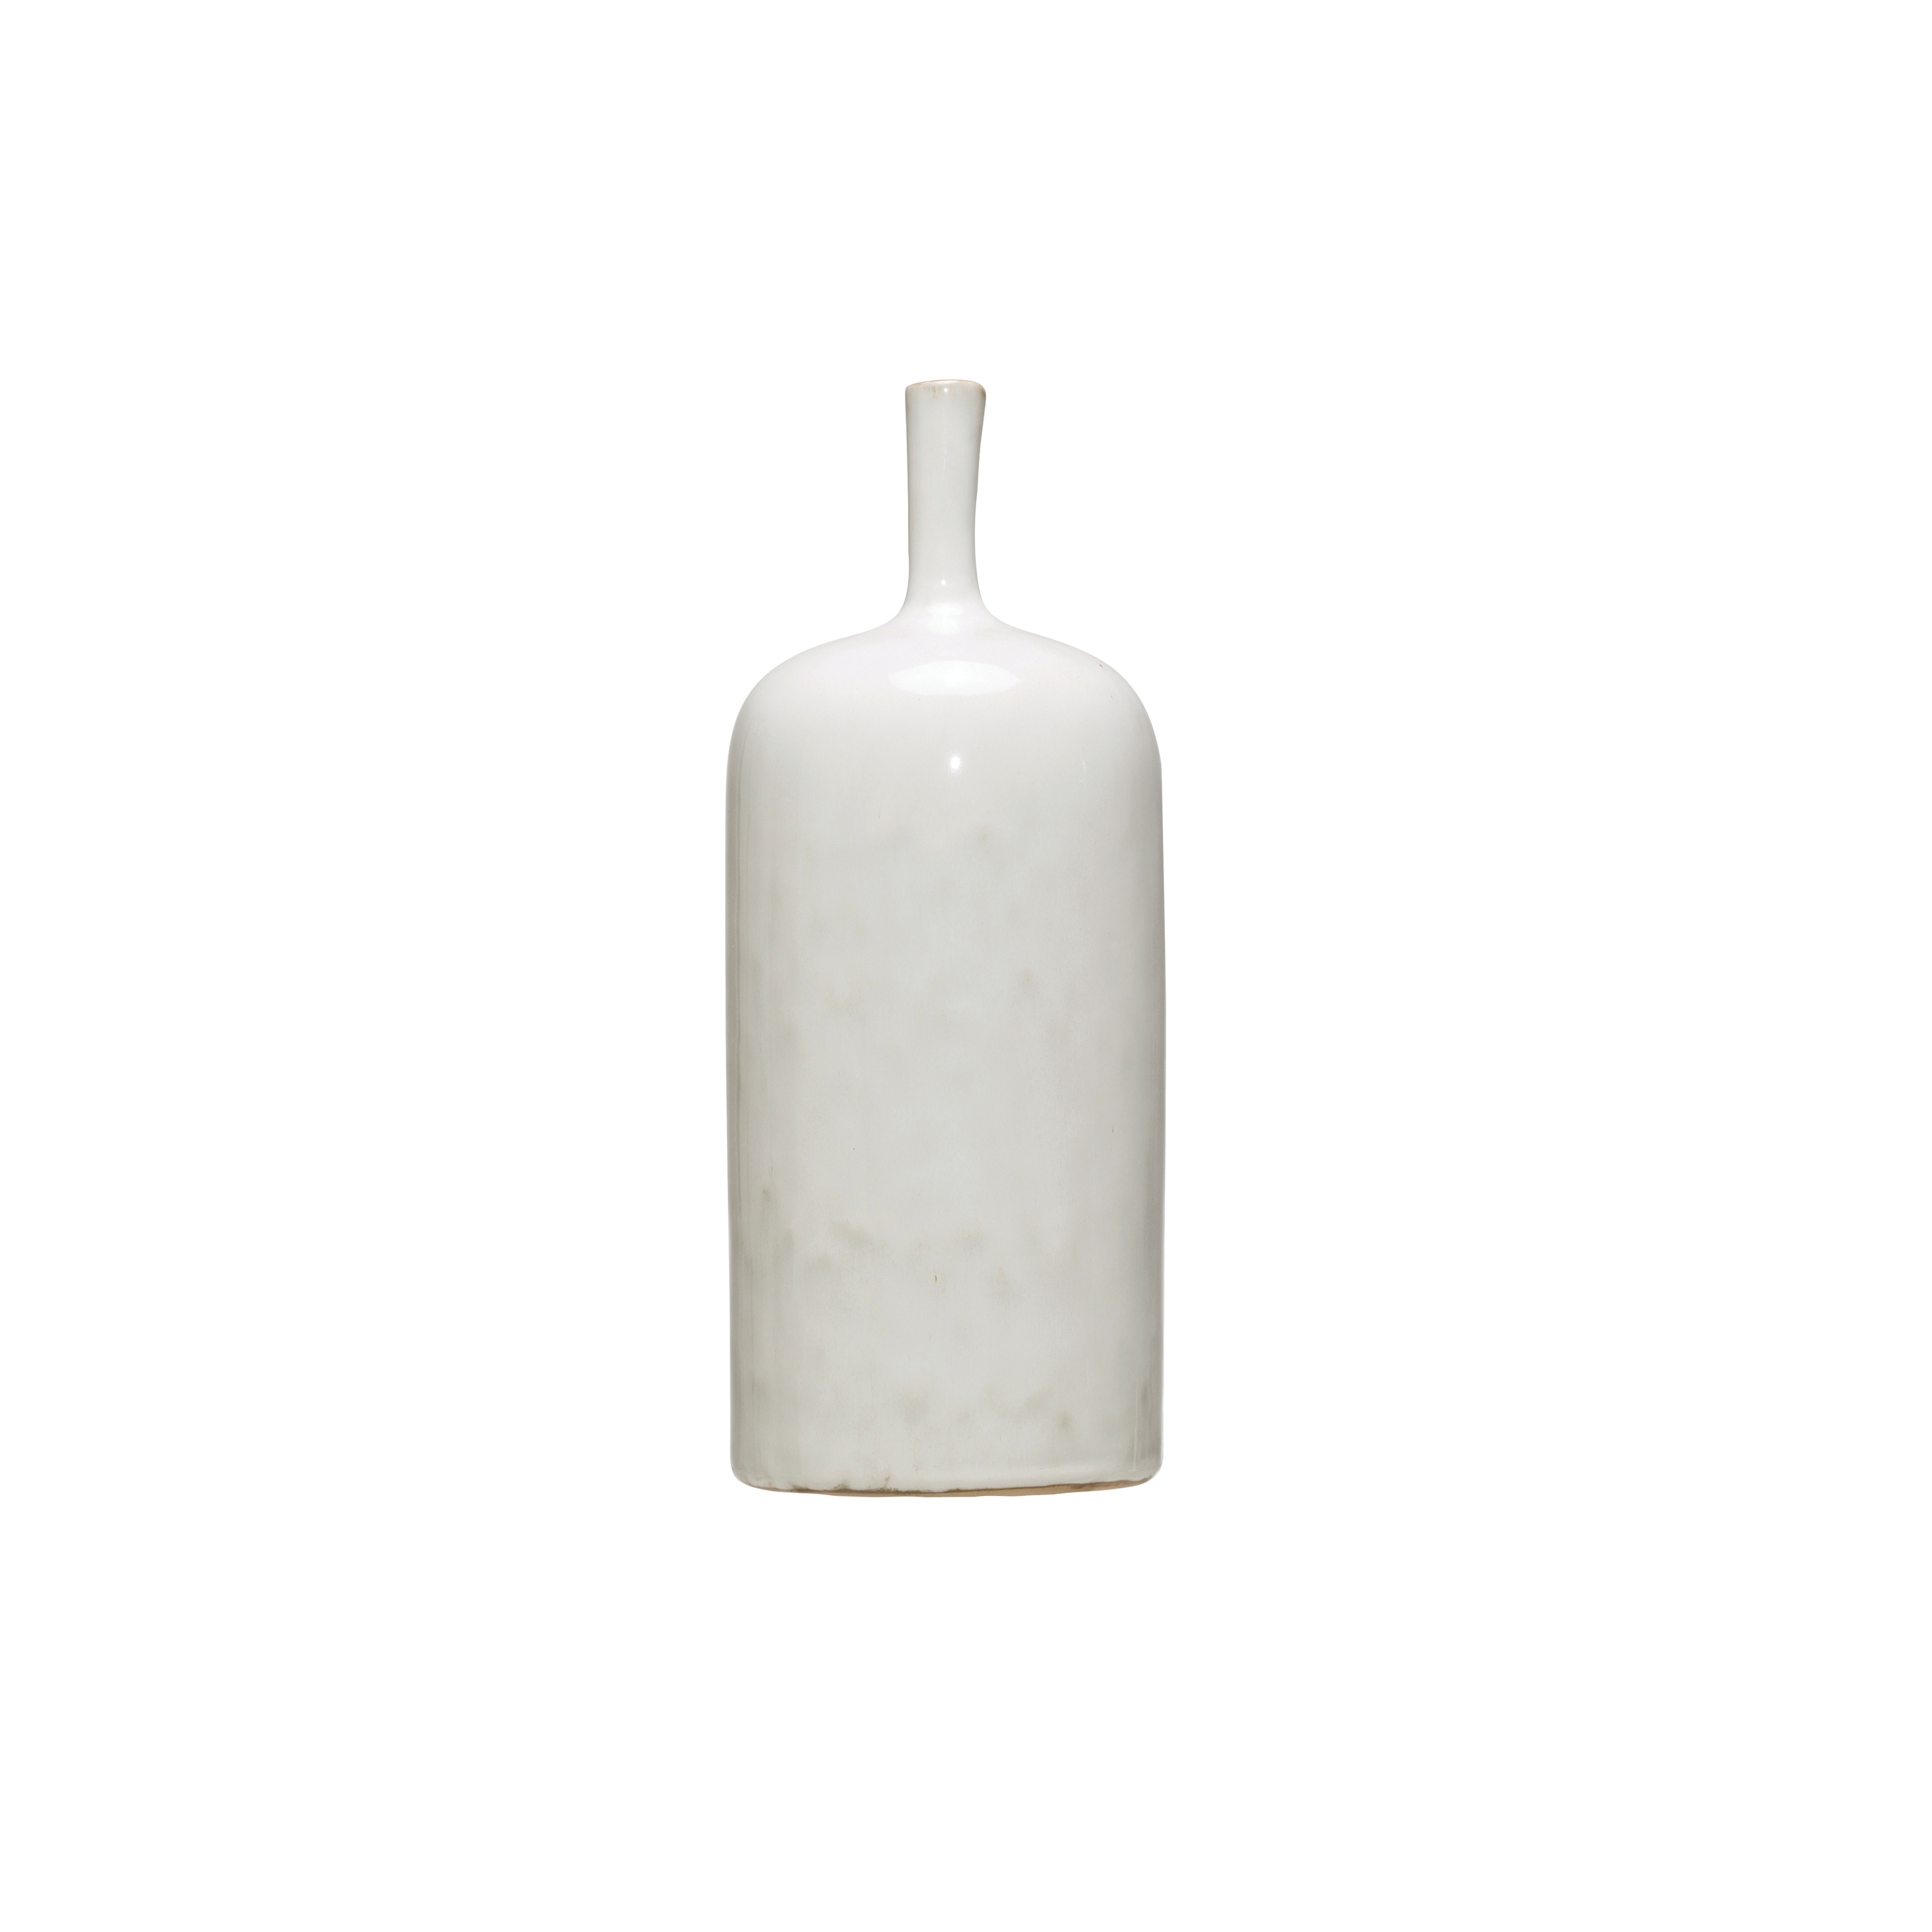 Narrow Bottle Neck Vase, White, Large - Image 0